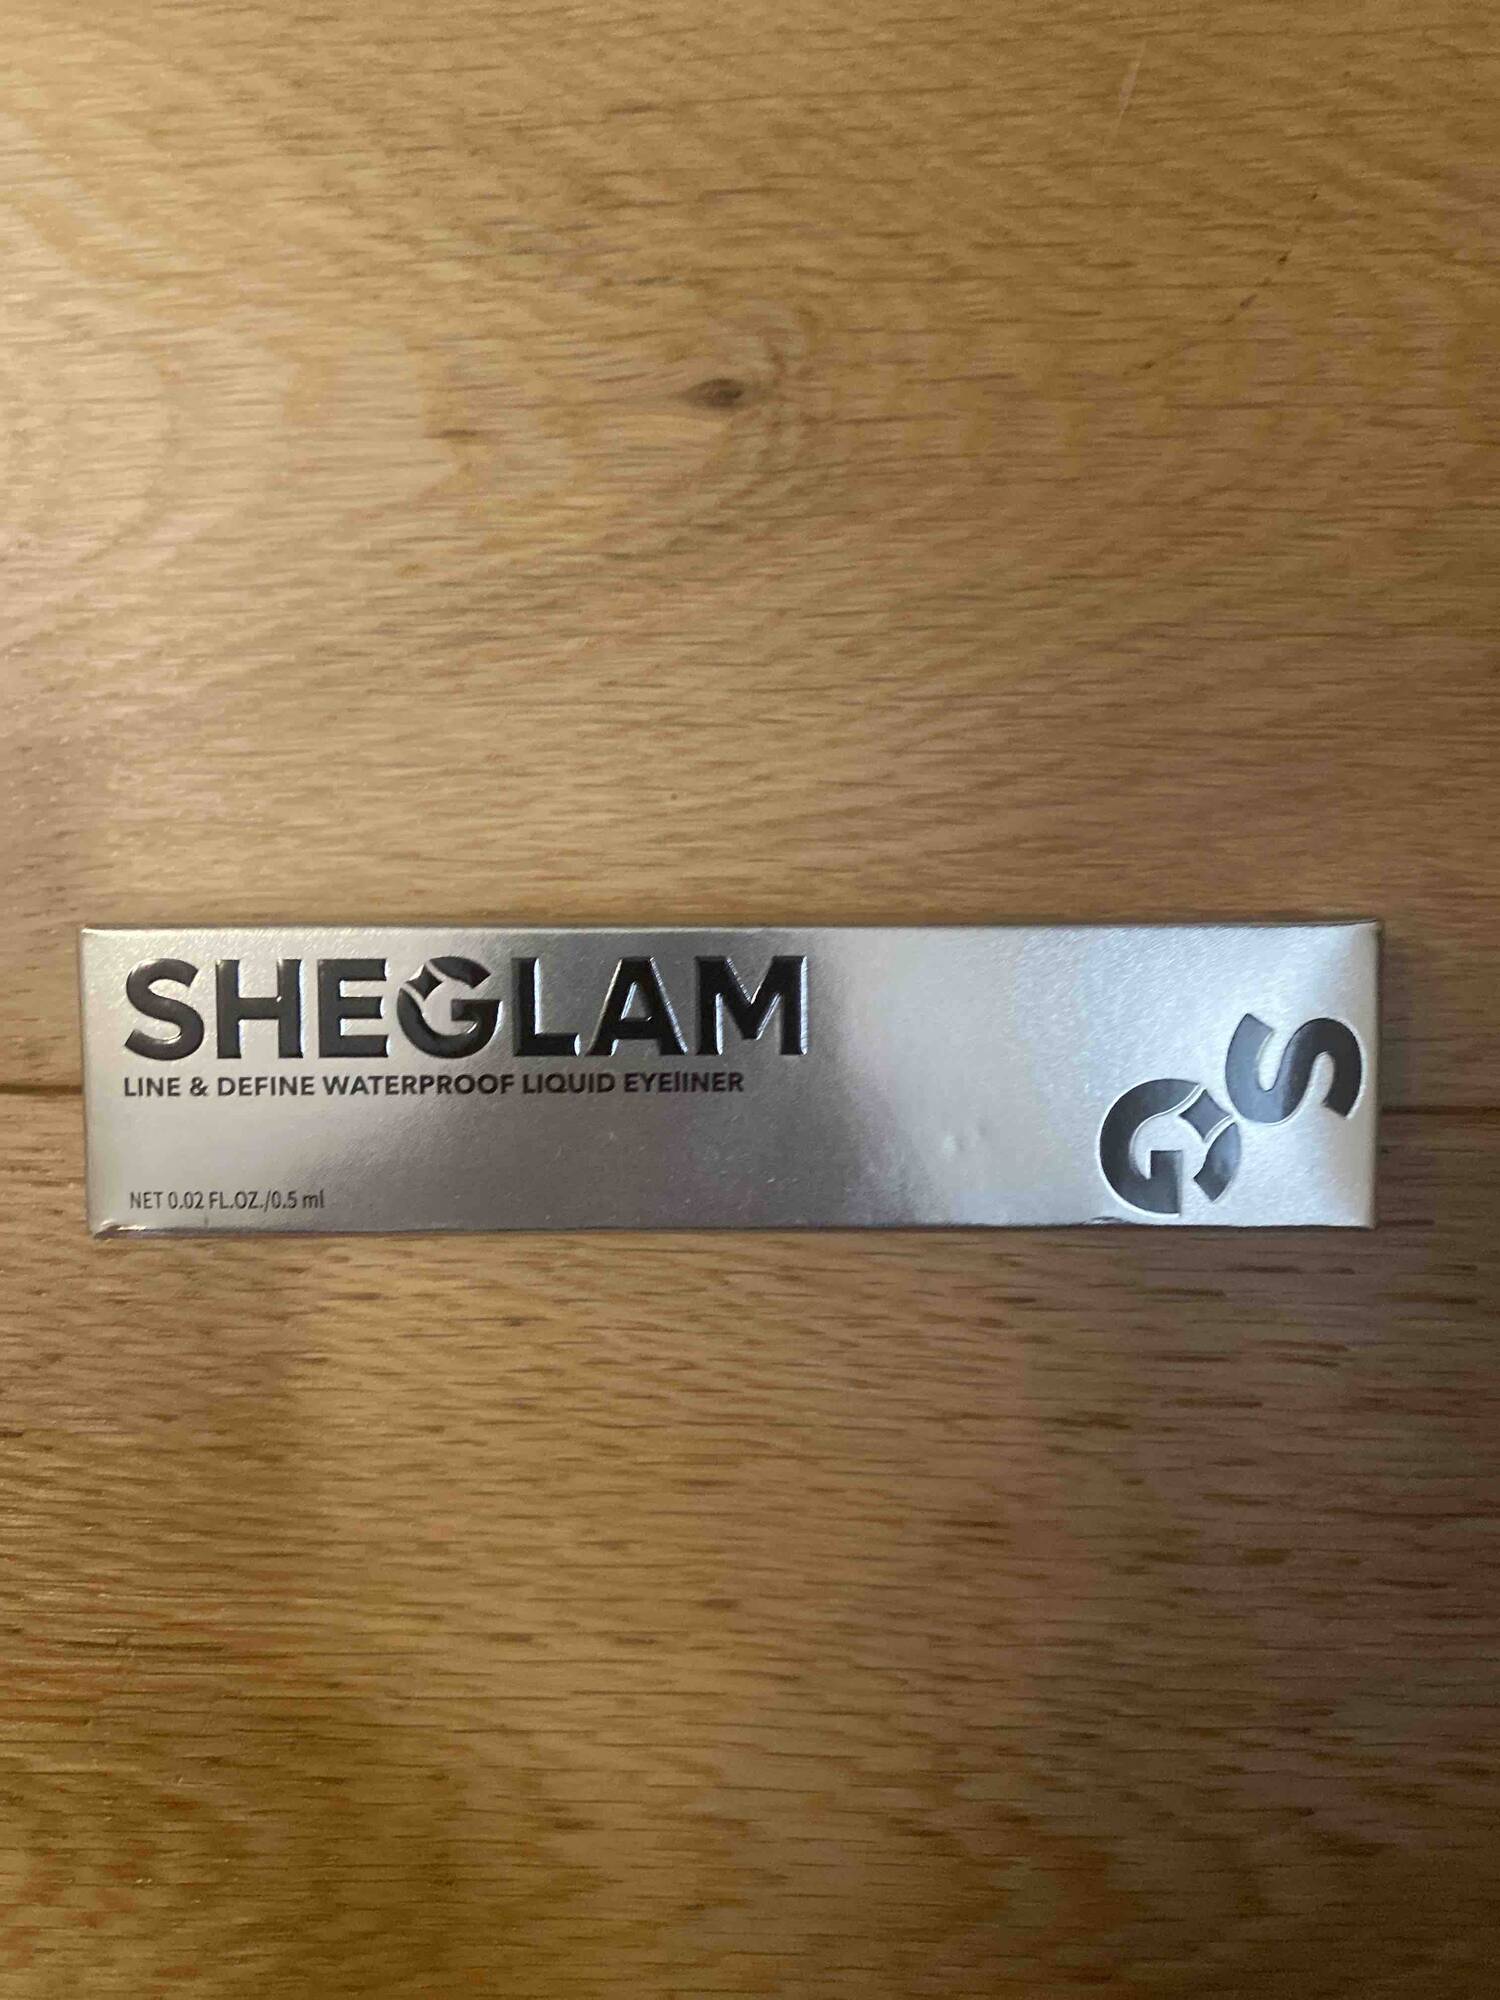 SHEGLAM - Line & define waterproof liquid eyeliner